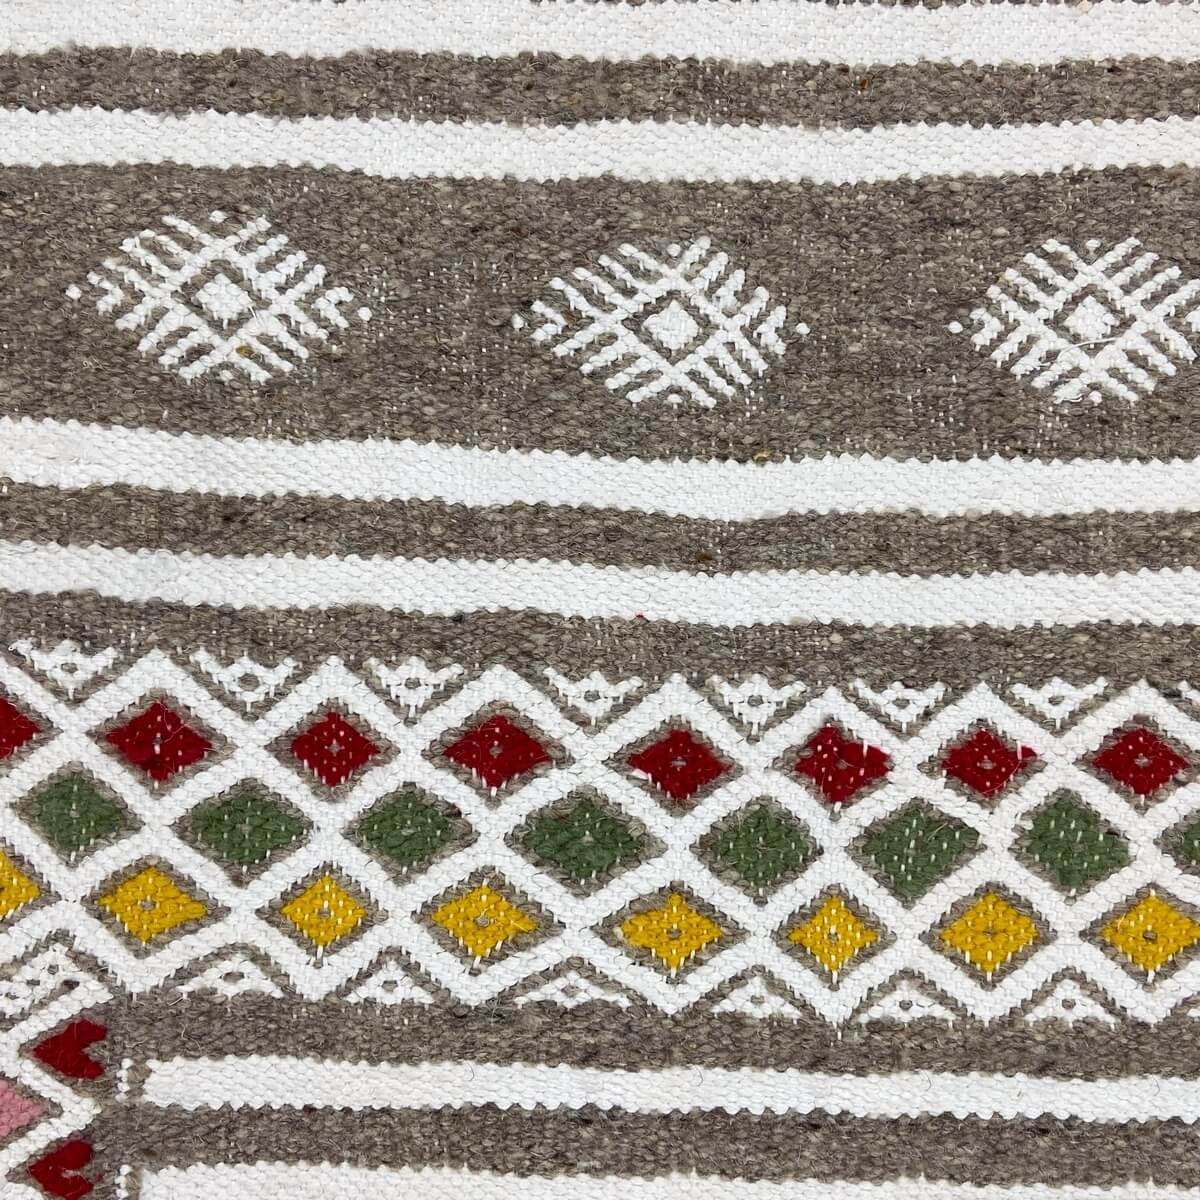 Tapis berbère Tapis Kilim Alissa 110x190 Gris/Multicolore (Tissé main, Laine) Tapis kilim tunisien style tapis marocain. Tapis r